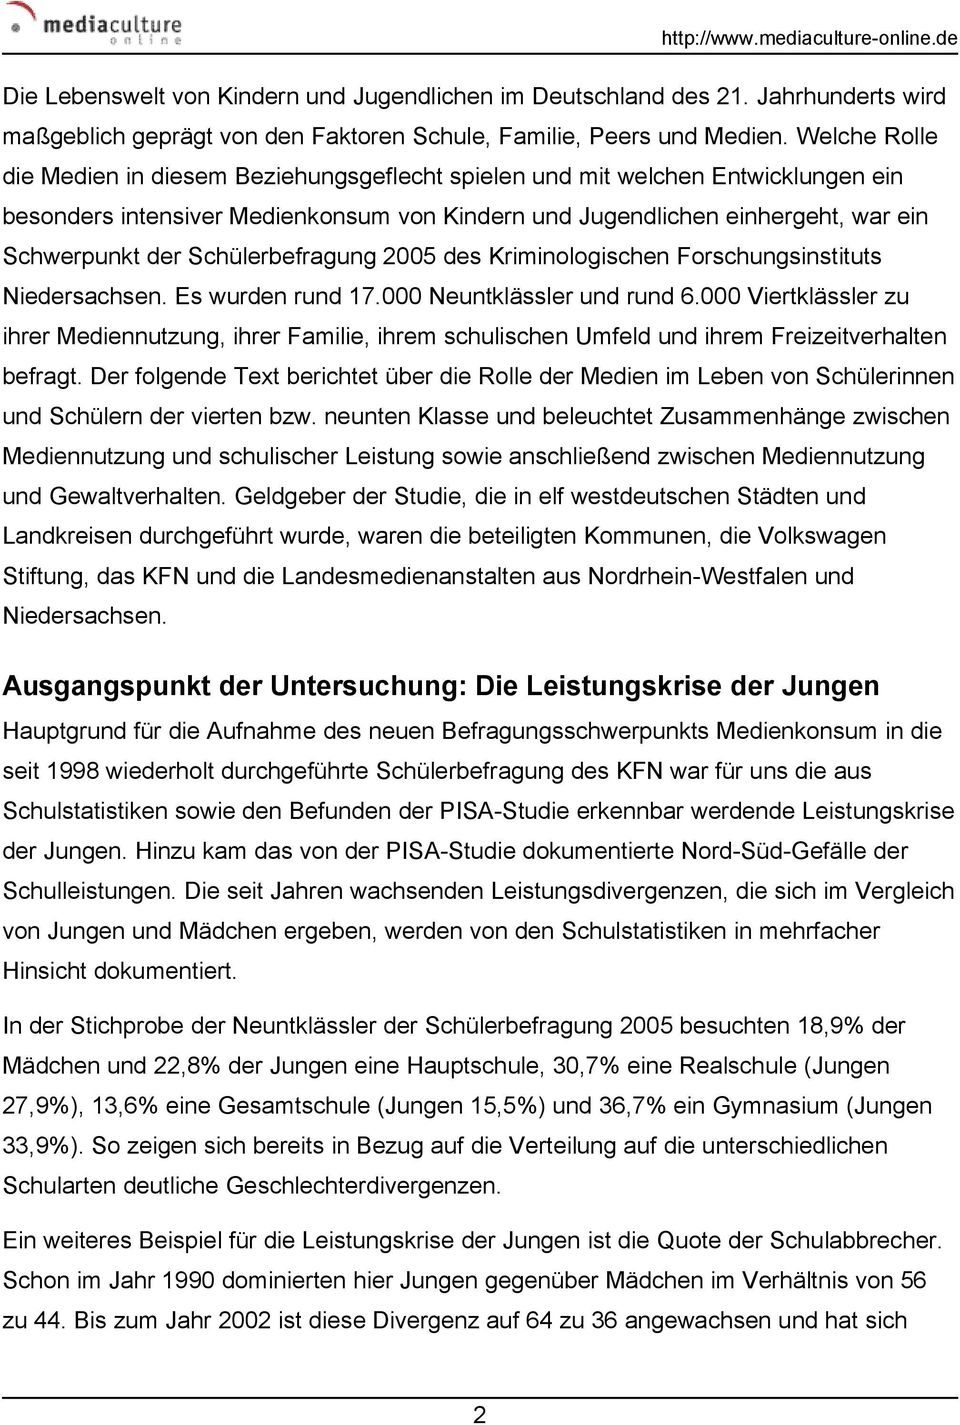 Schülerbefragung 2005 des Kriminologischen Forschungsinstituts Niedersachsen. Es wurden rund 17.000 Neuntklässler und rund 6.